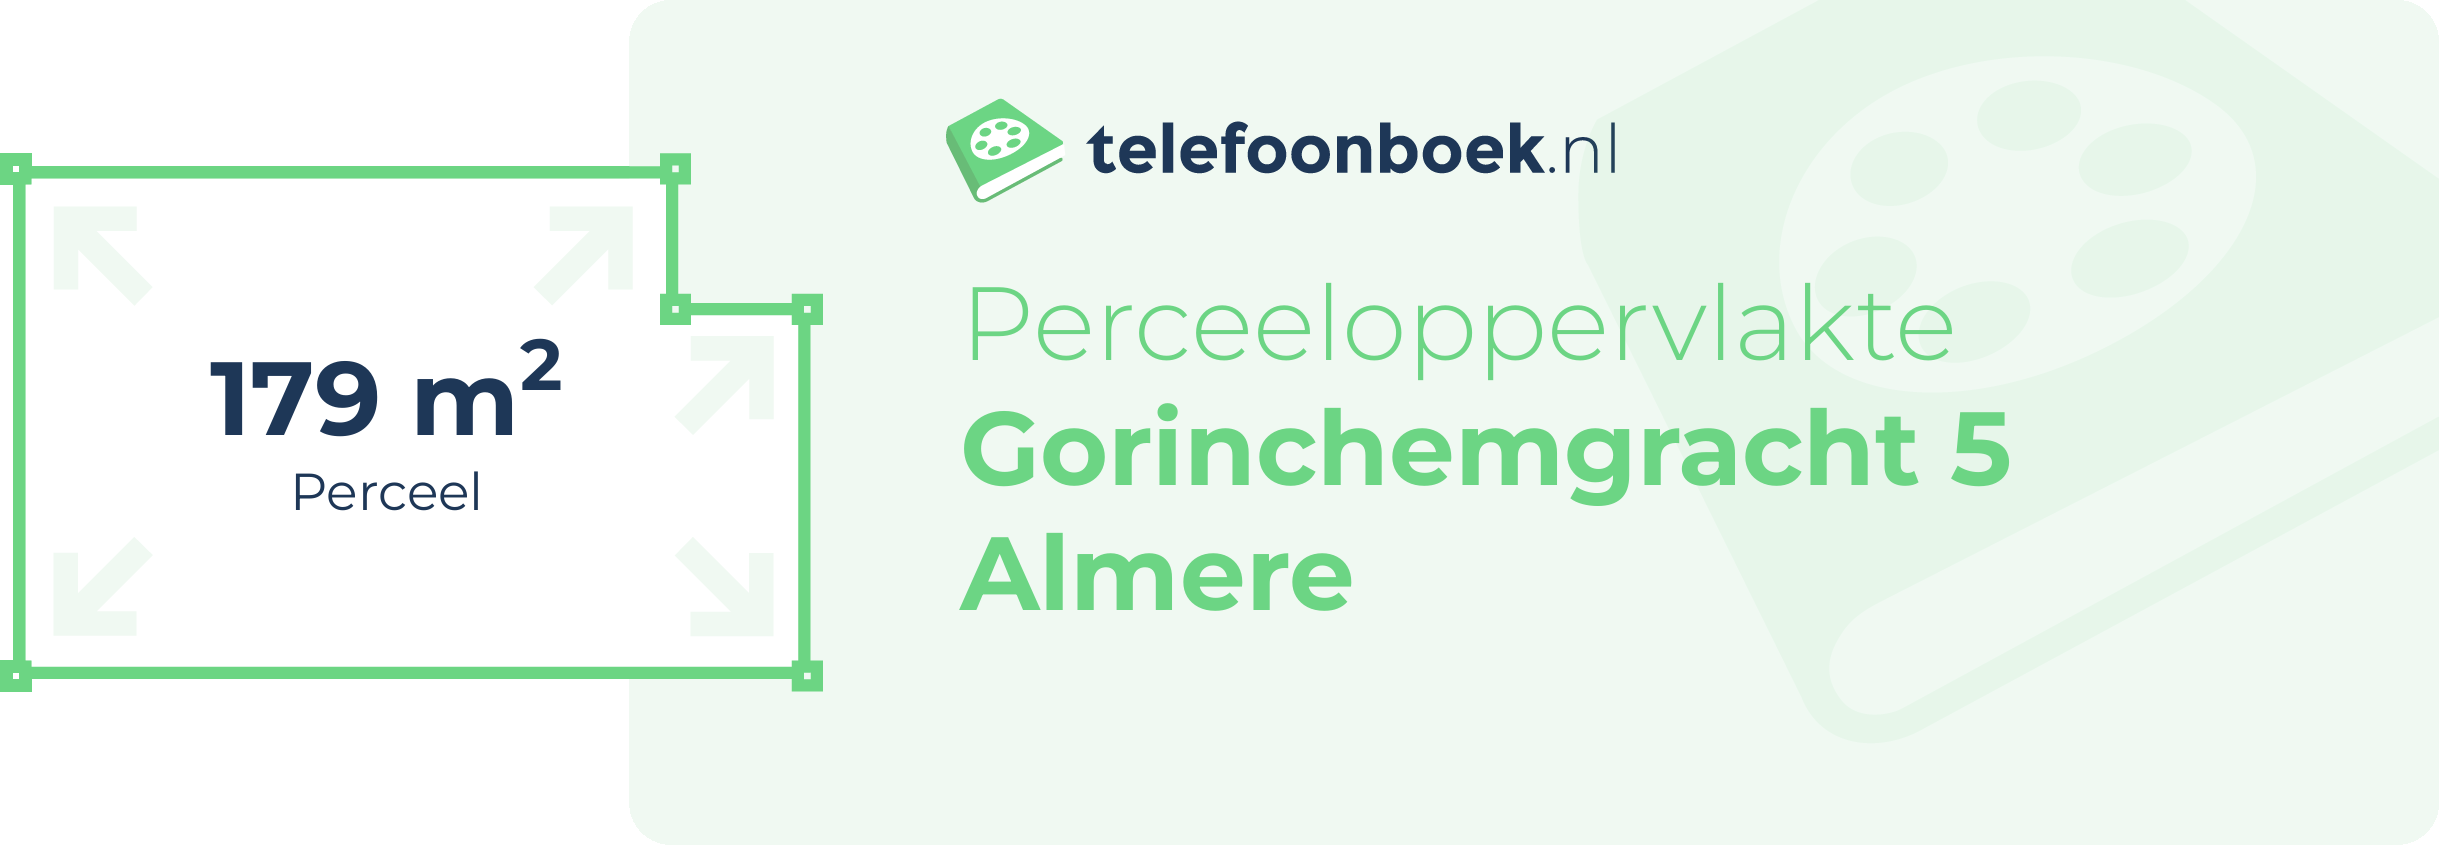 Perceeloppervlakte Gorinchemgracht 5 Almere